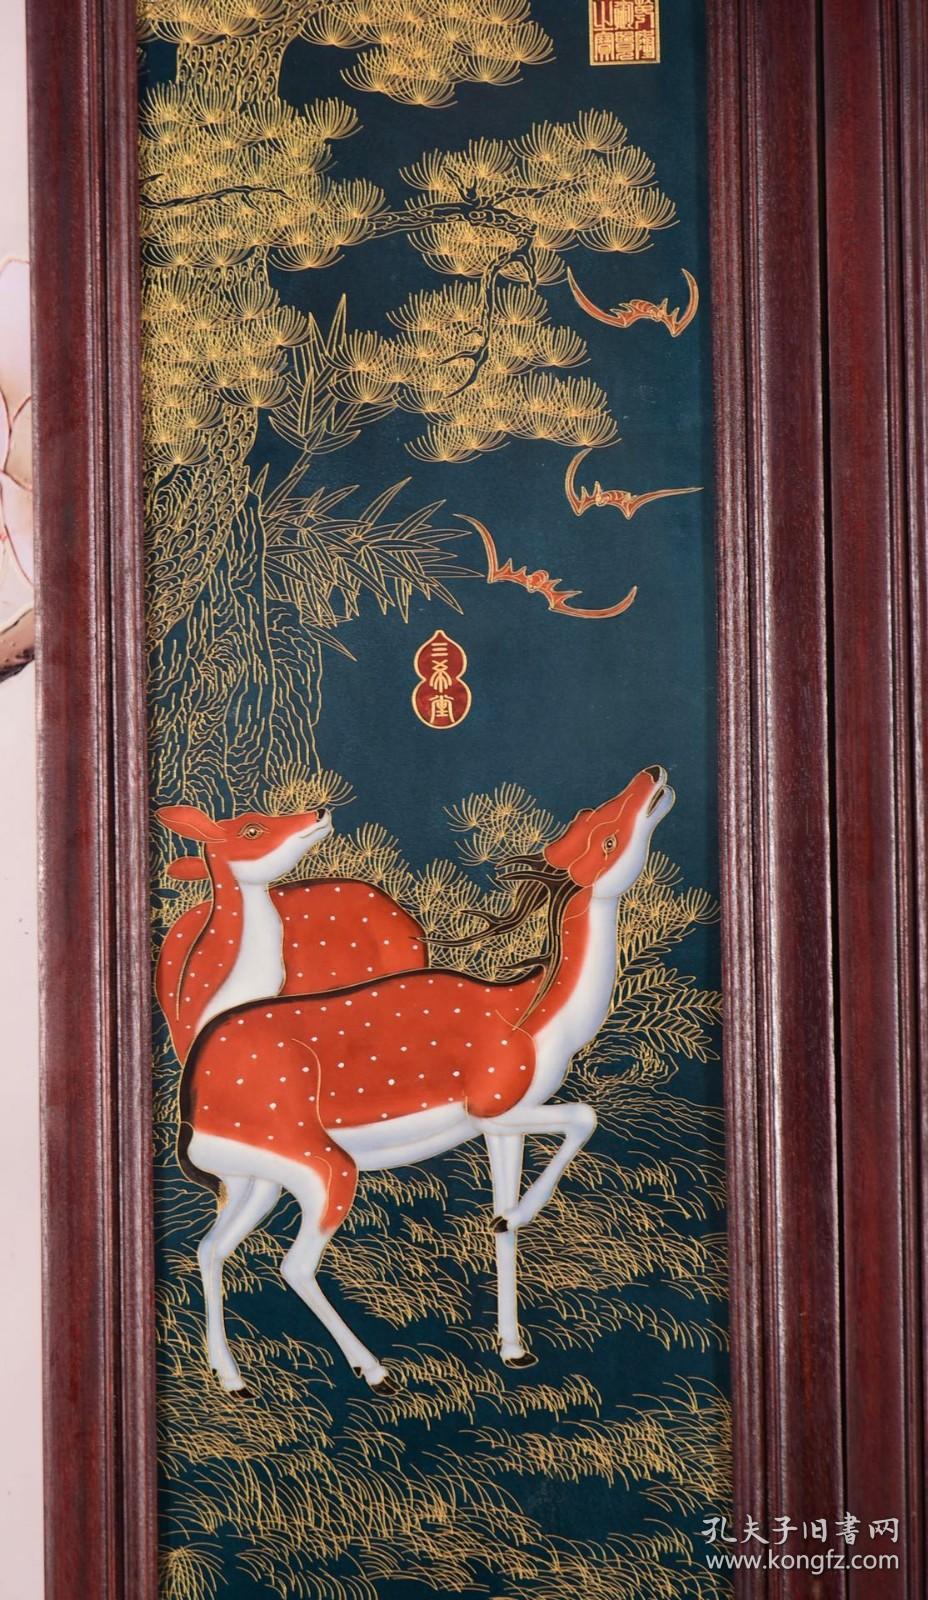 红木镶绿地珐琅彩掐金丝瓷板《福禄亨通》中堂三件套挂屏一组